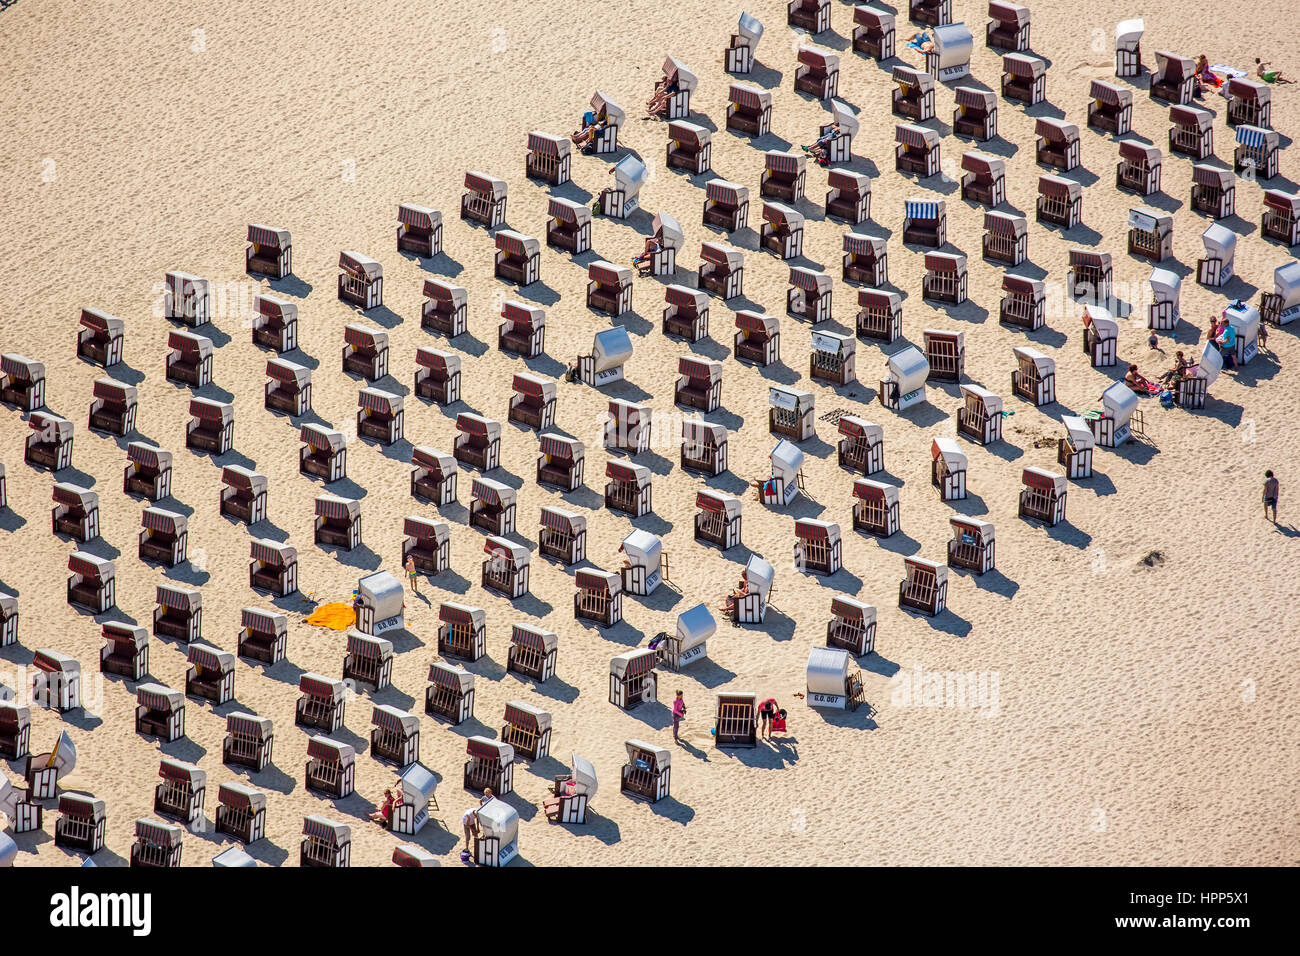 Chaises de plage sur la plage de sable, mer Baltique, Sellin , côte de la mer Baltique, Mecklembourg-Poméranie-Occidentale, Allemagne Banque D'Images